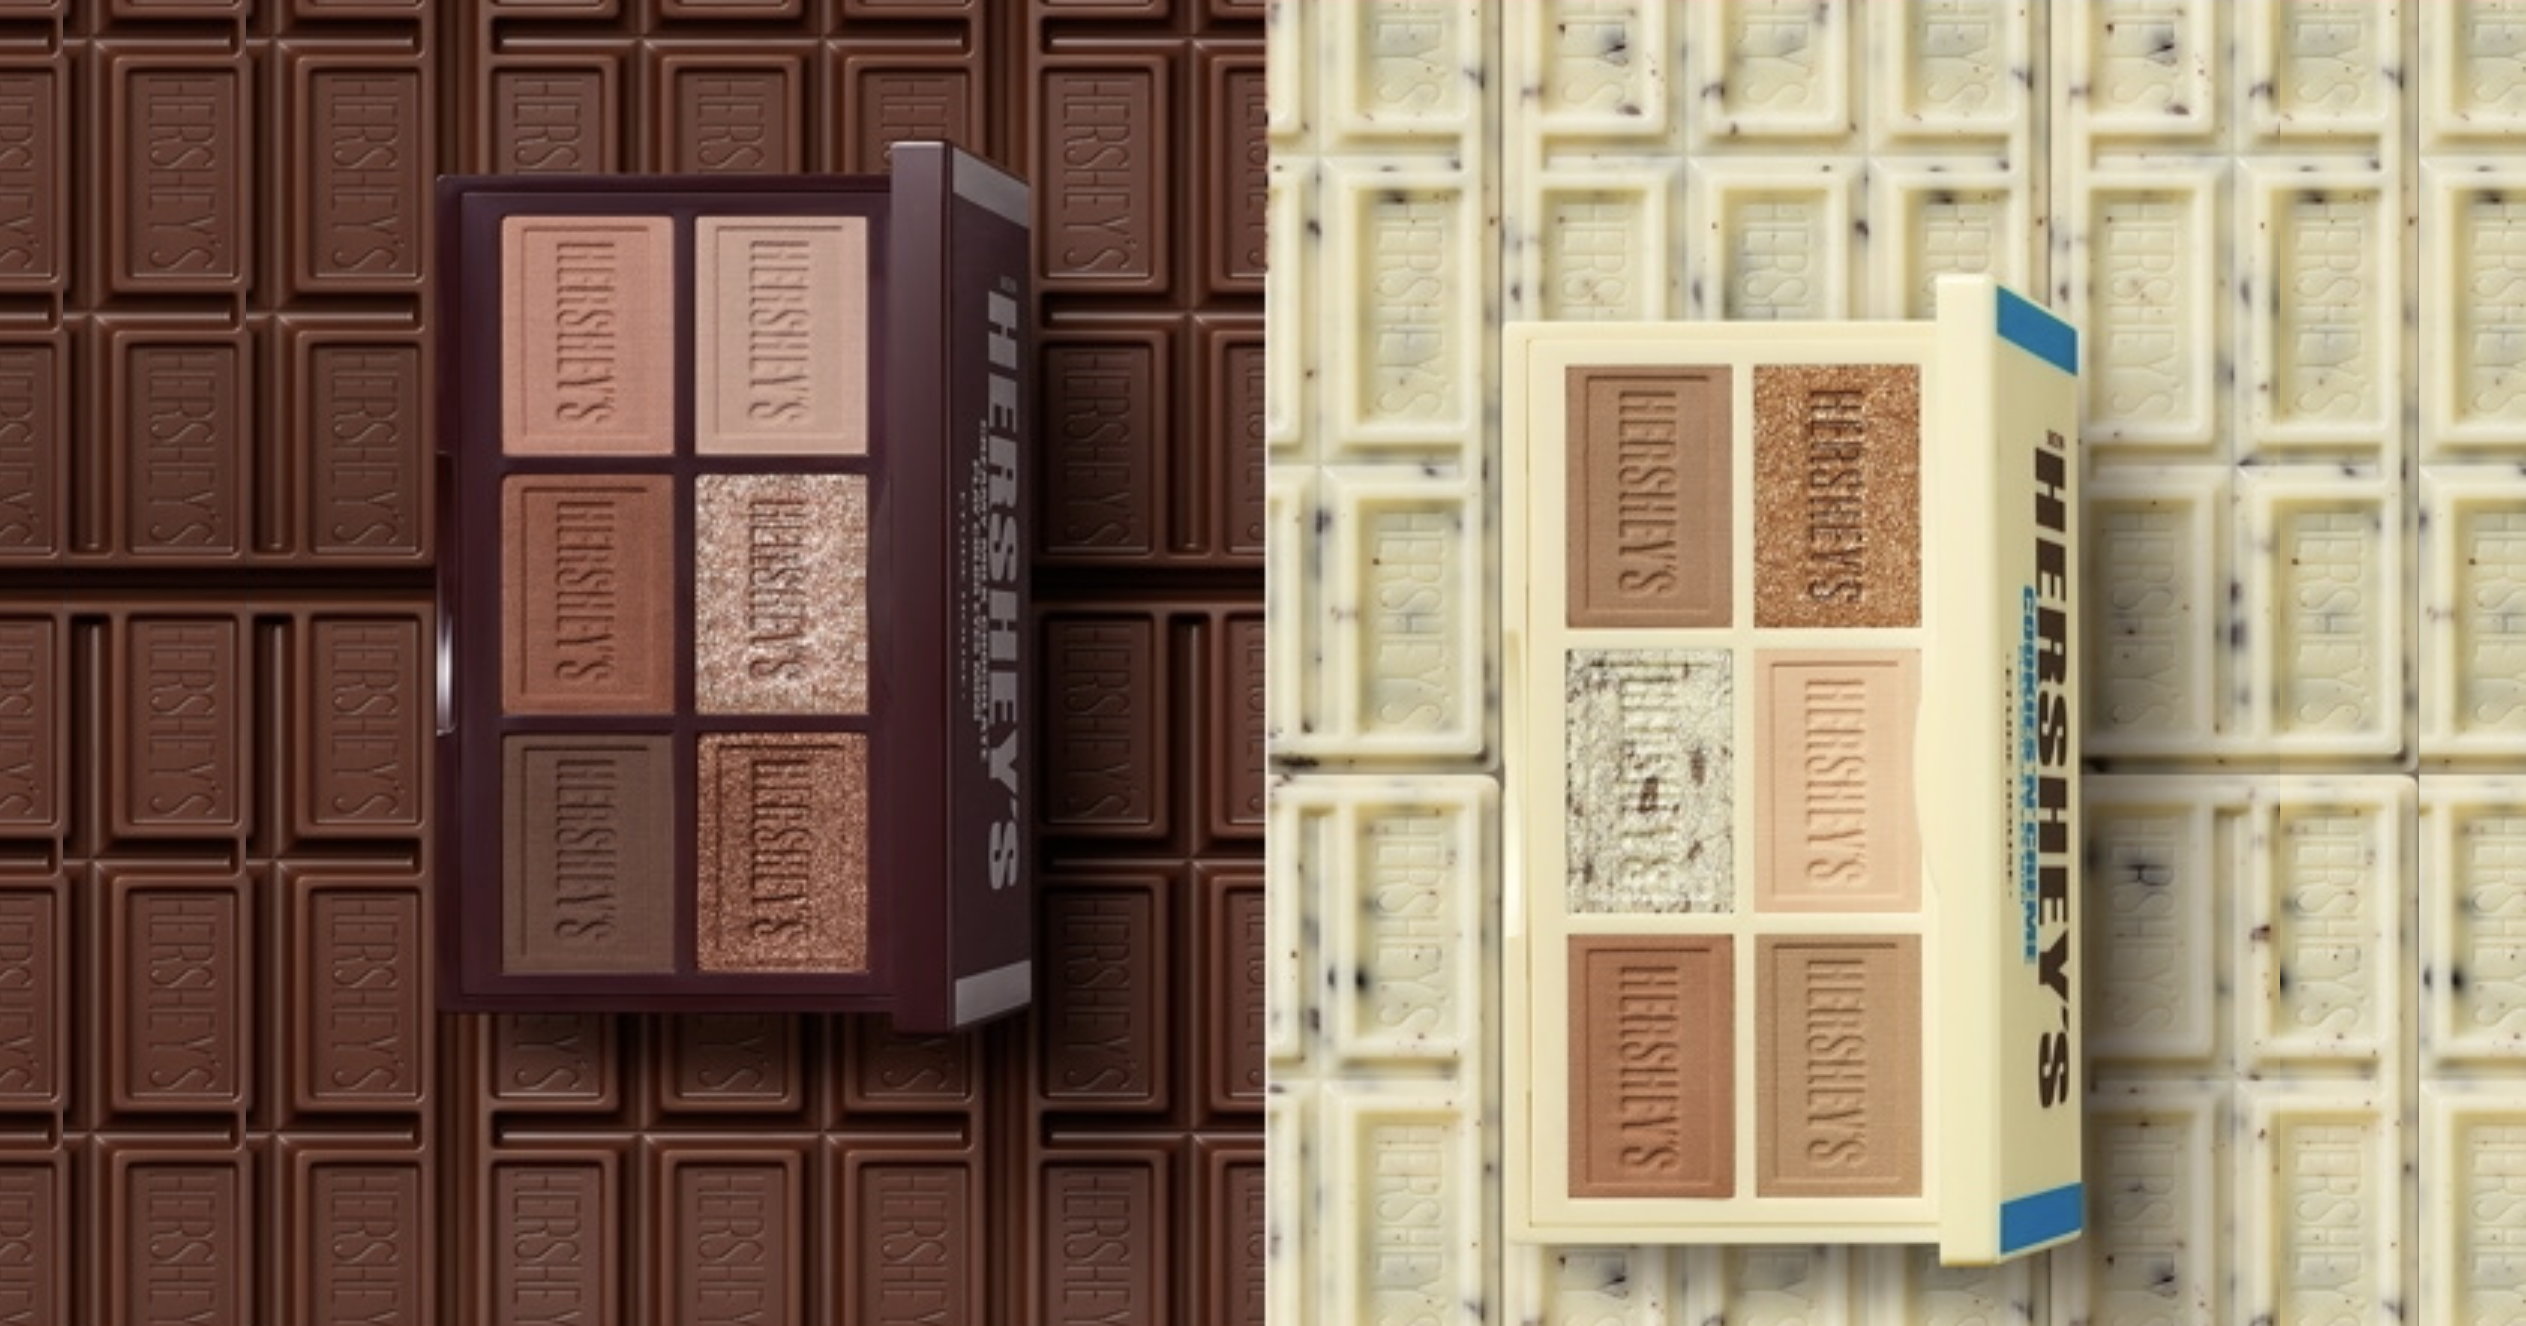 Etude House Y Hershey&Acute;S 67 Hershey's Lanza Maquillaje Inspirado En Sus Barras De Chocolate